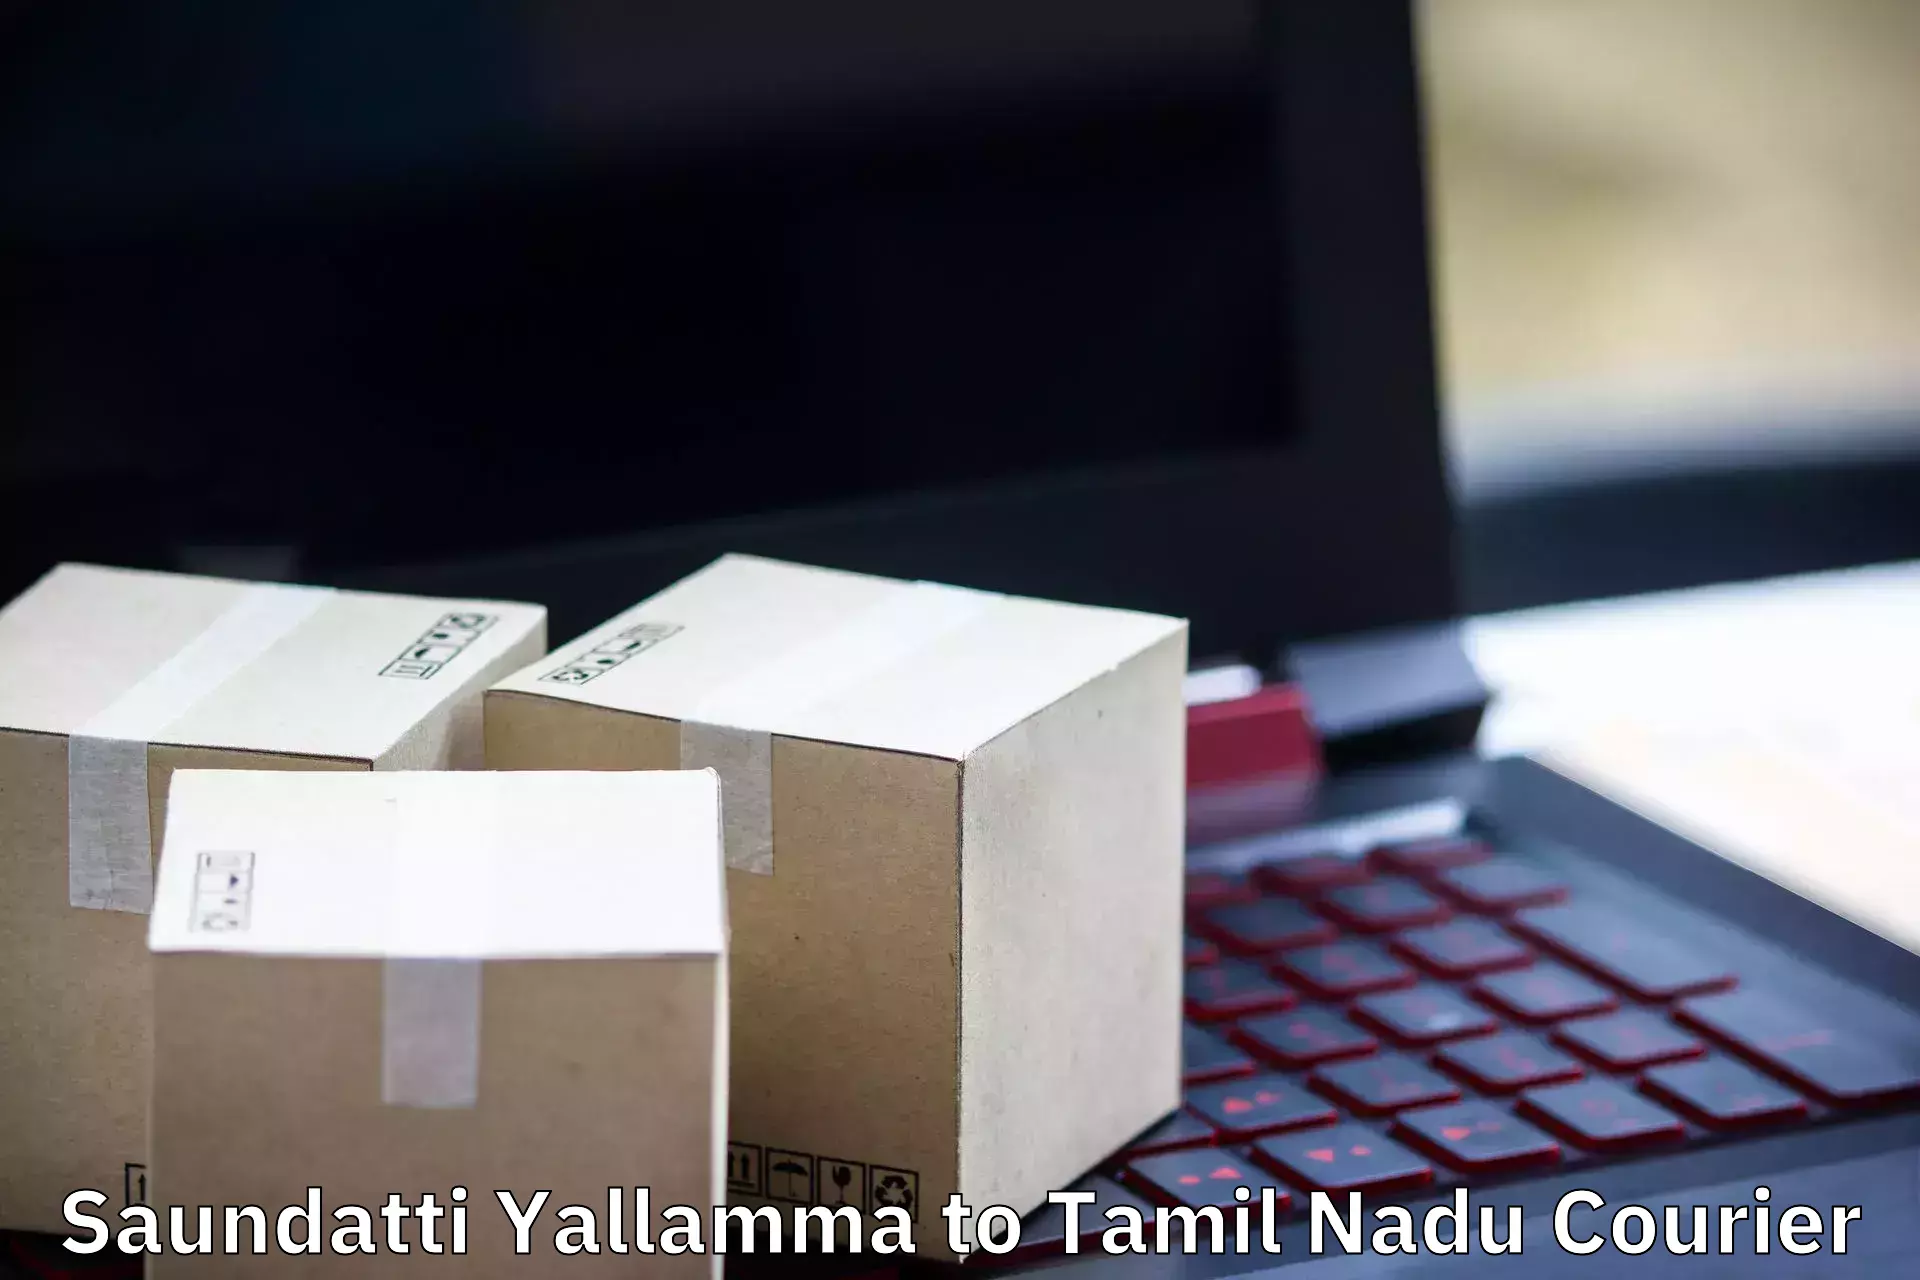 Efficient relocation services Saundatti Yallamma to Tiruchi